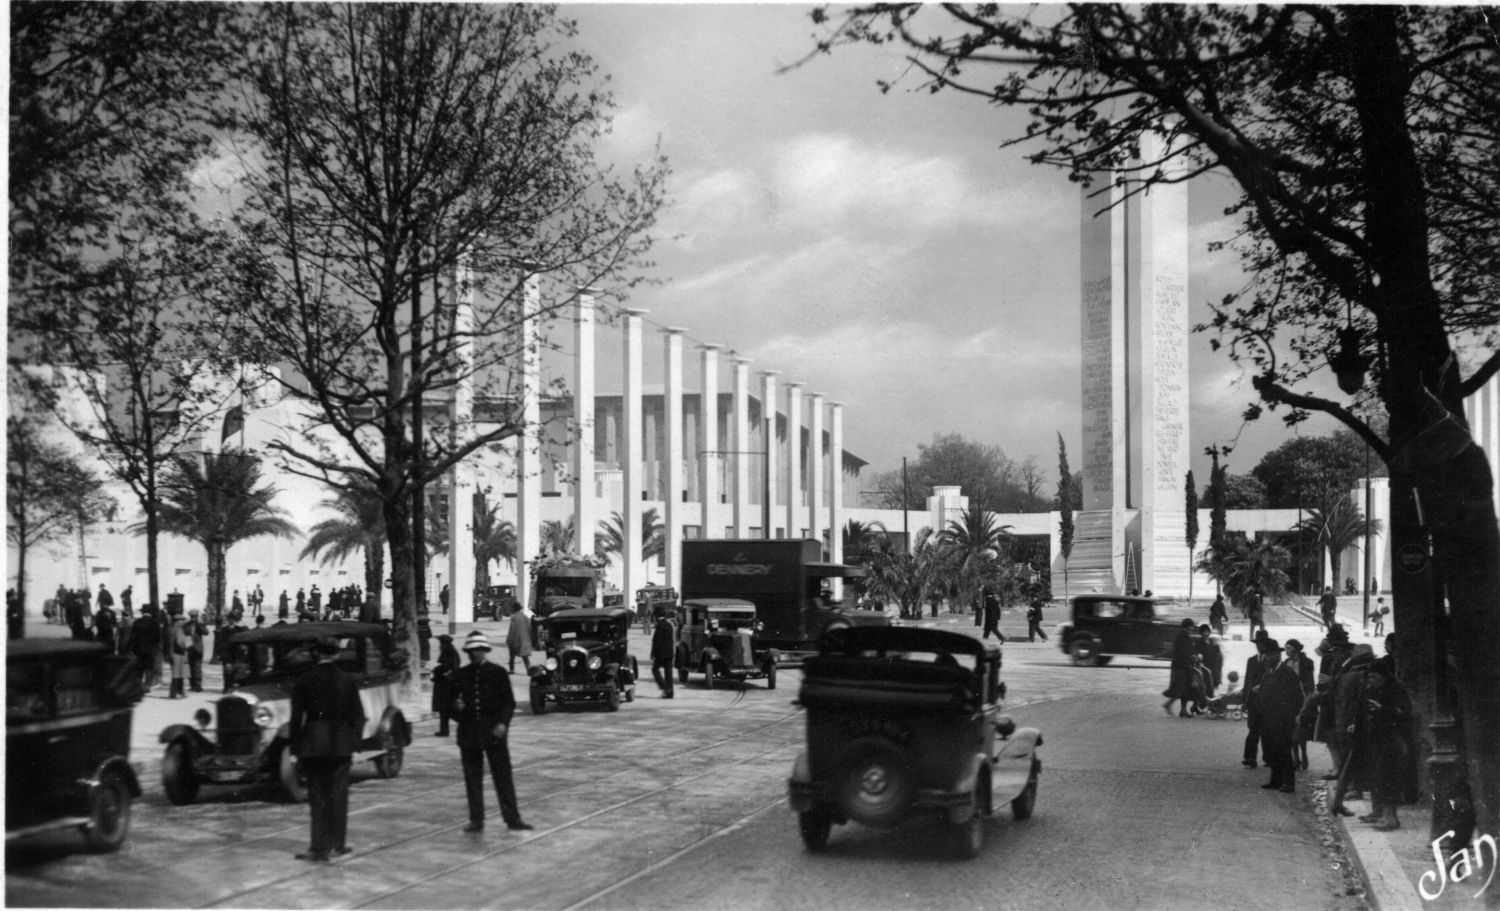 Paris 1930